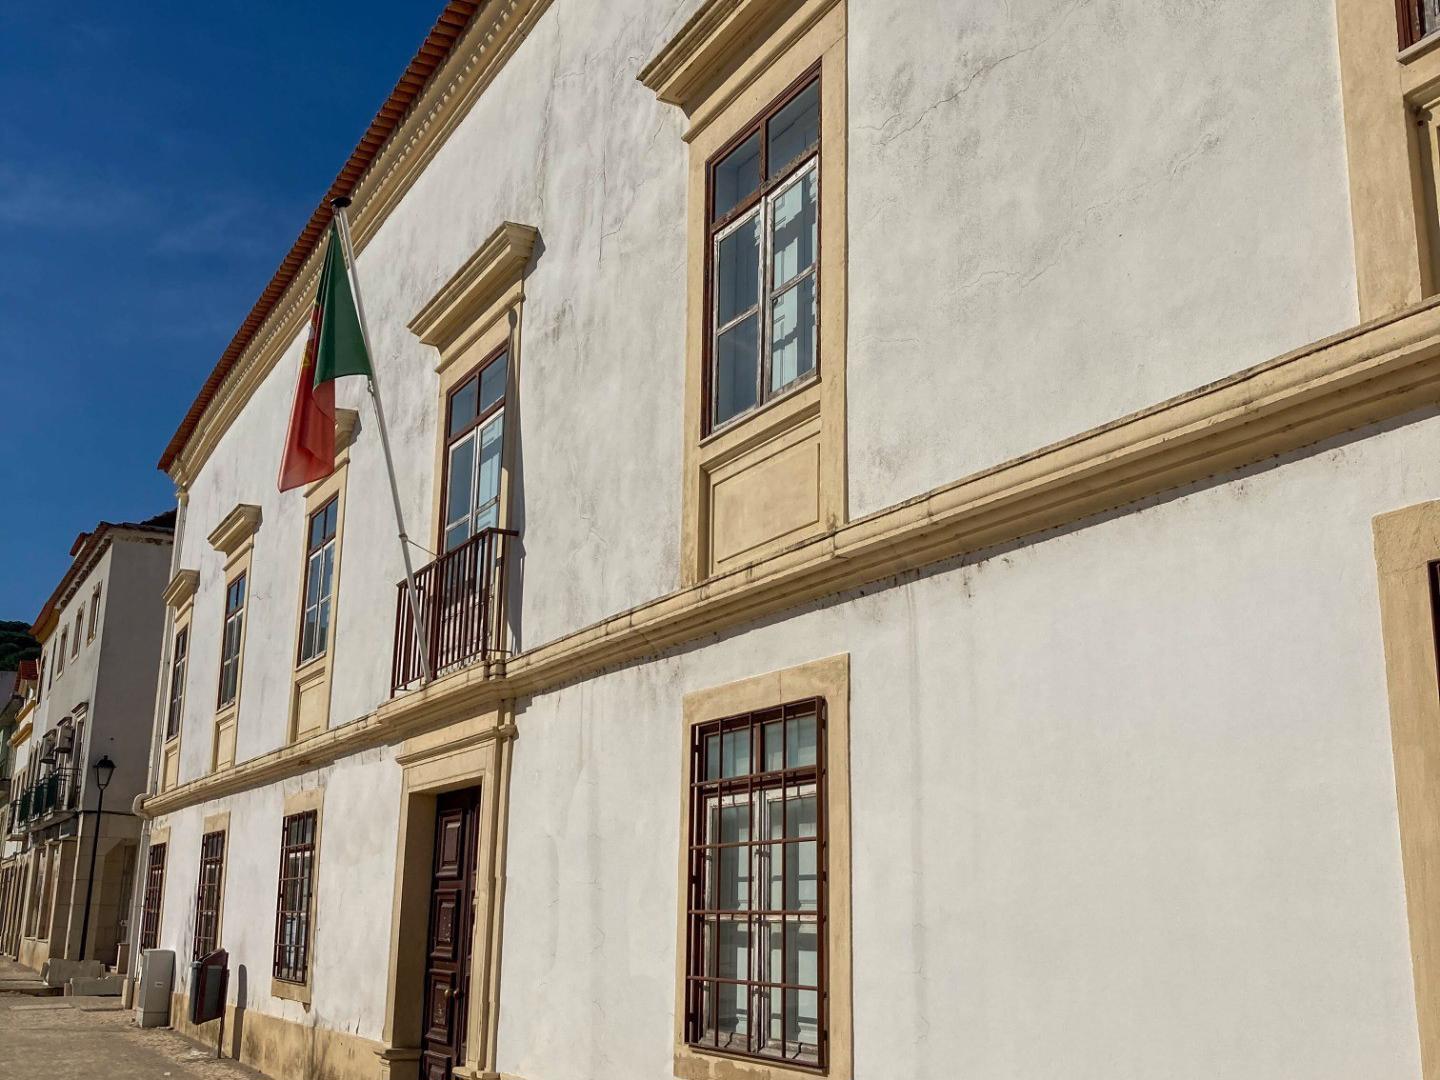 Fachada - O Palácio de Alvaiázere, situado no centro histórico de Tomar, perto da antiga Várzea Grande, reveste-se de grande interesse arquitetónico, histórico e cultural para a cidade, sendo um registo do seu desenvolvimento e evolução através dos séculos.